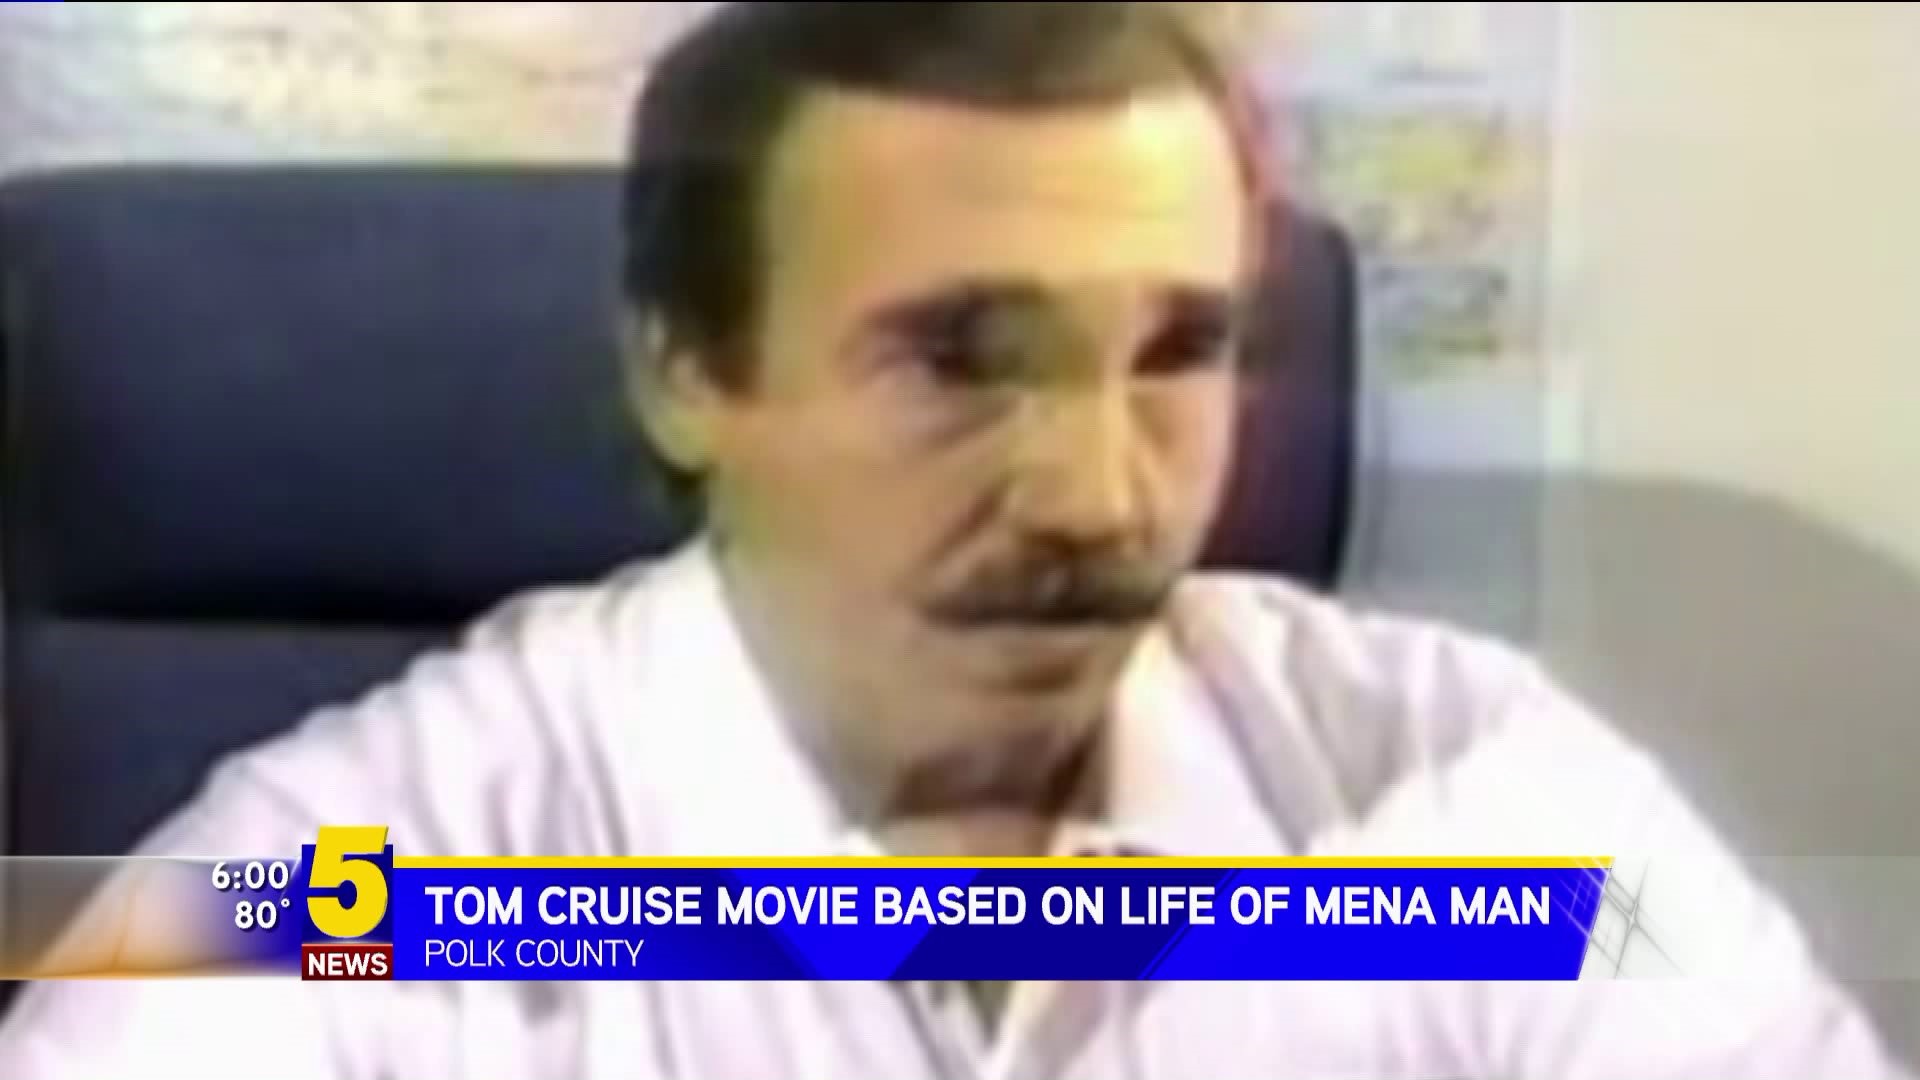 Tom Cruise Movie Based On Life Of Mena Man